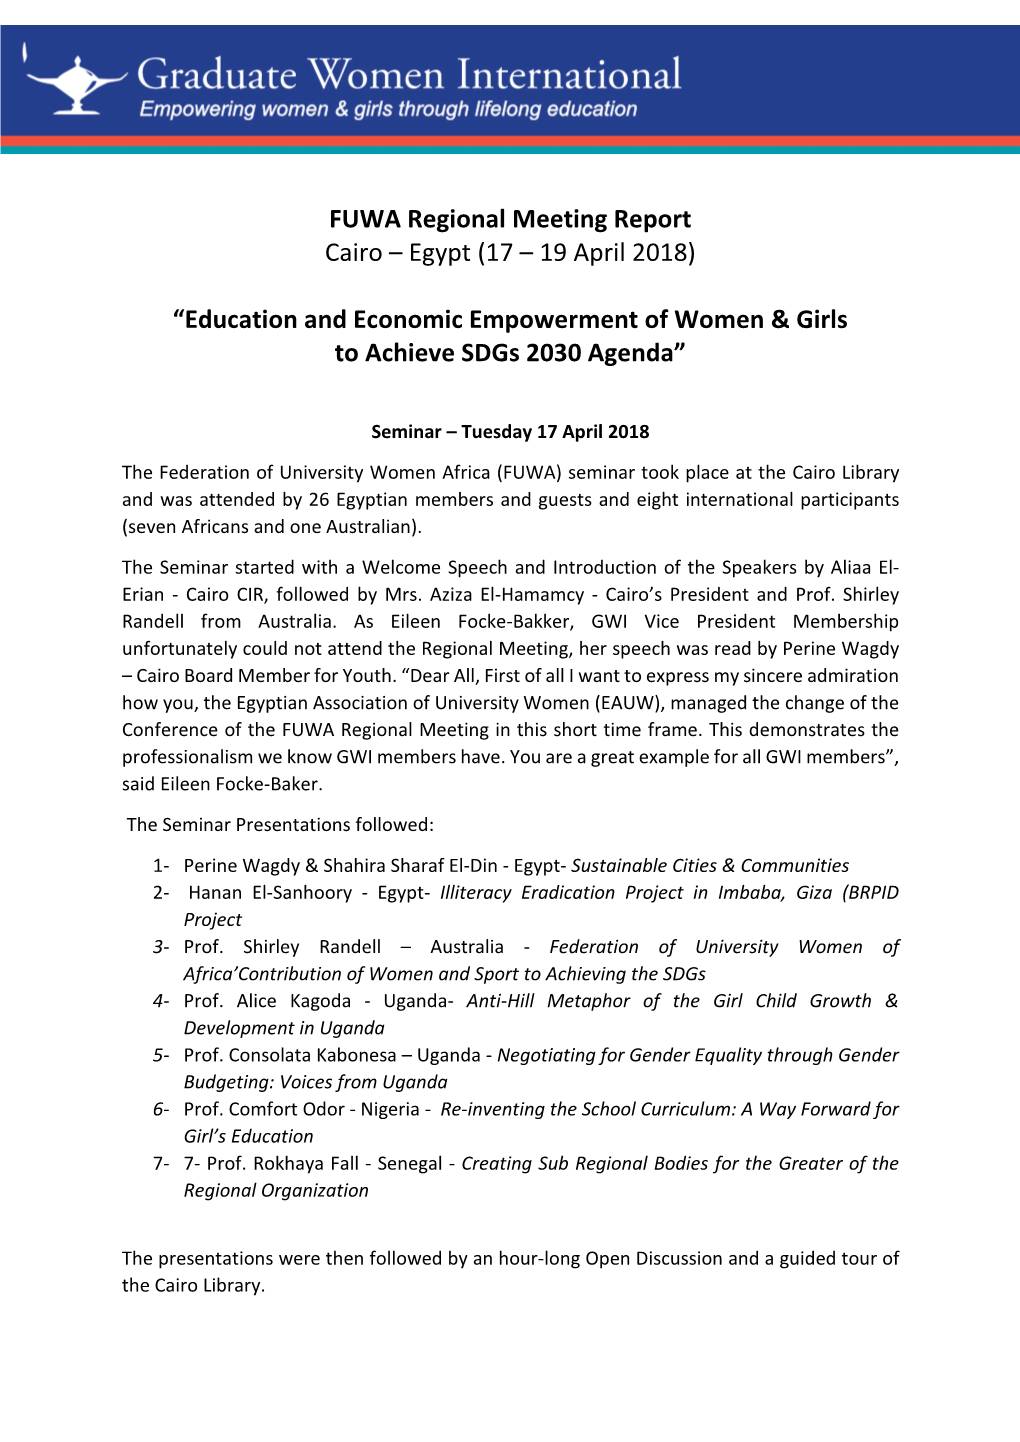 FUWA Regional Meeting Report Cairo – Egypt (17 – 19 April 2018)